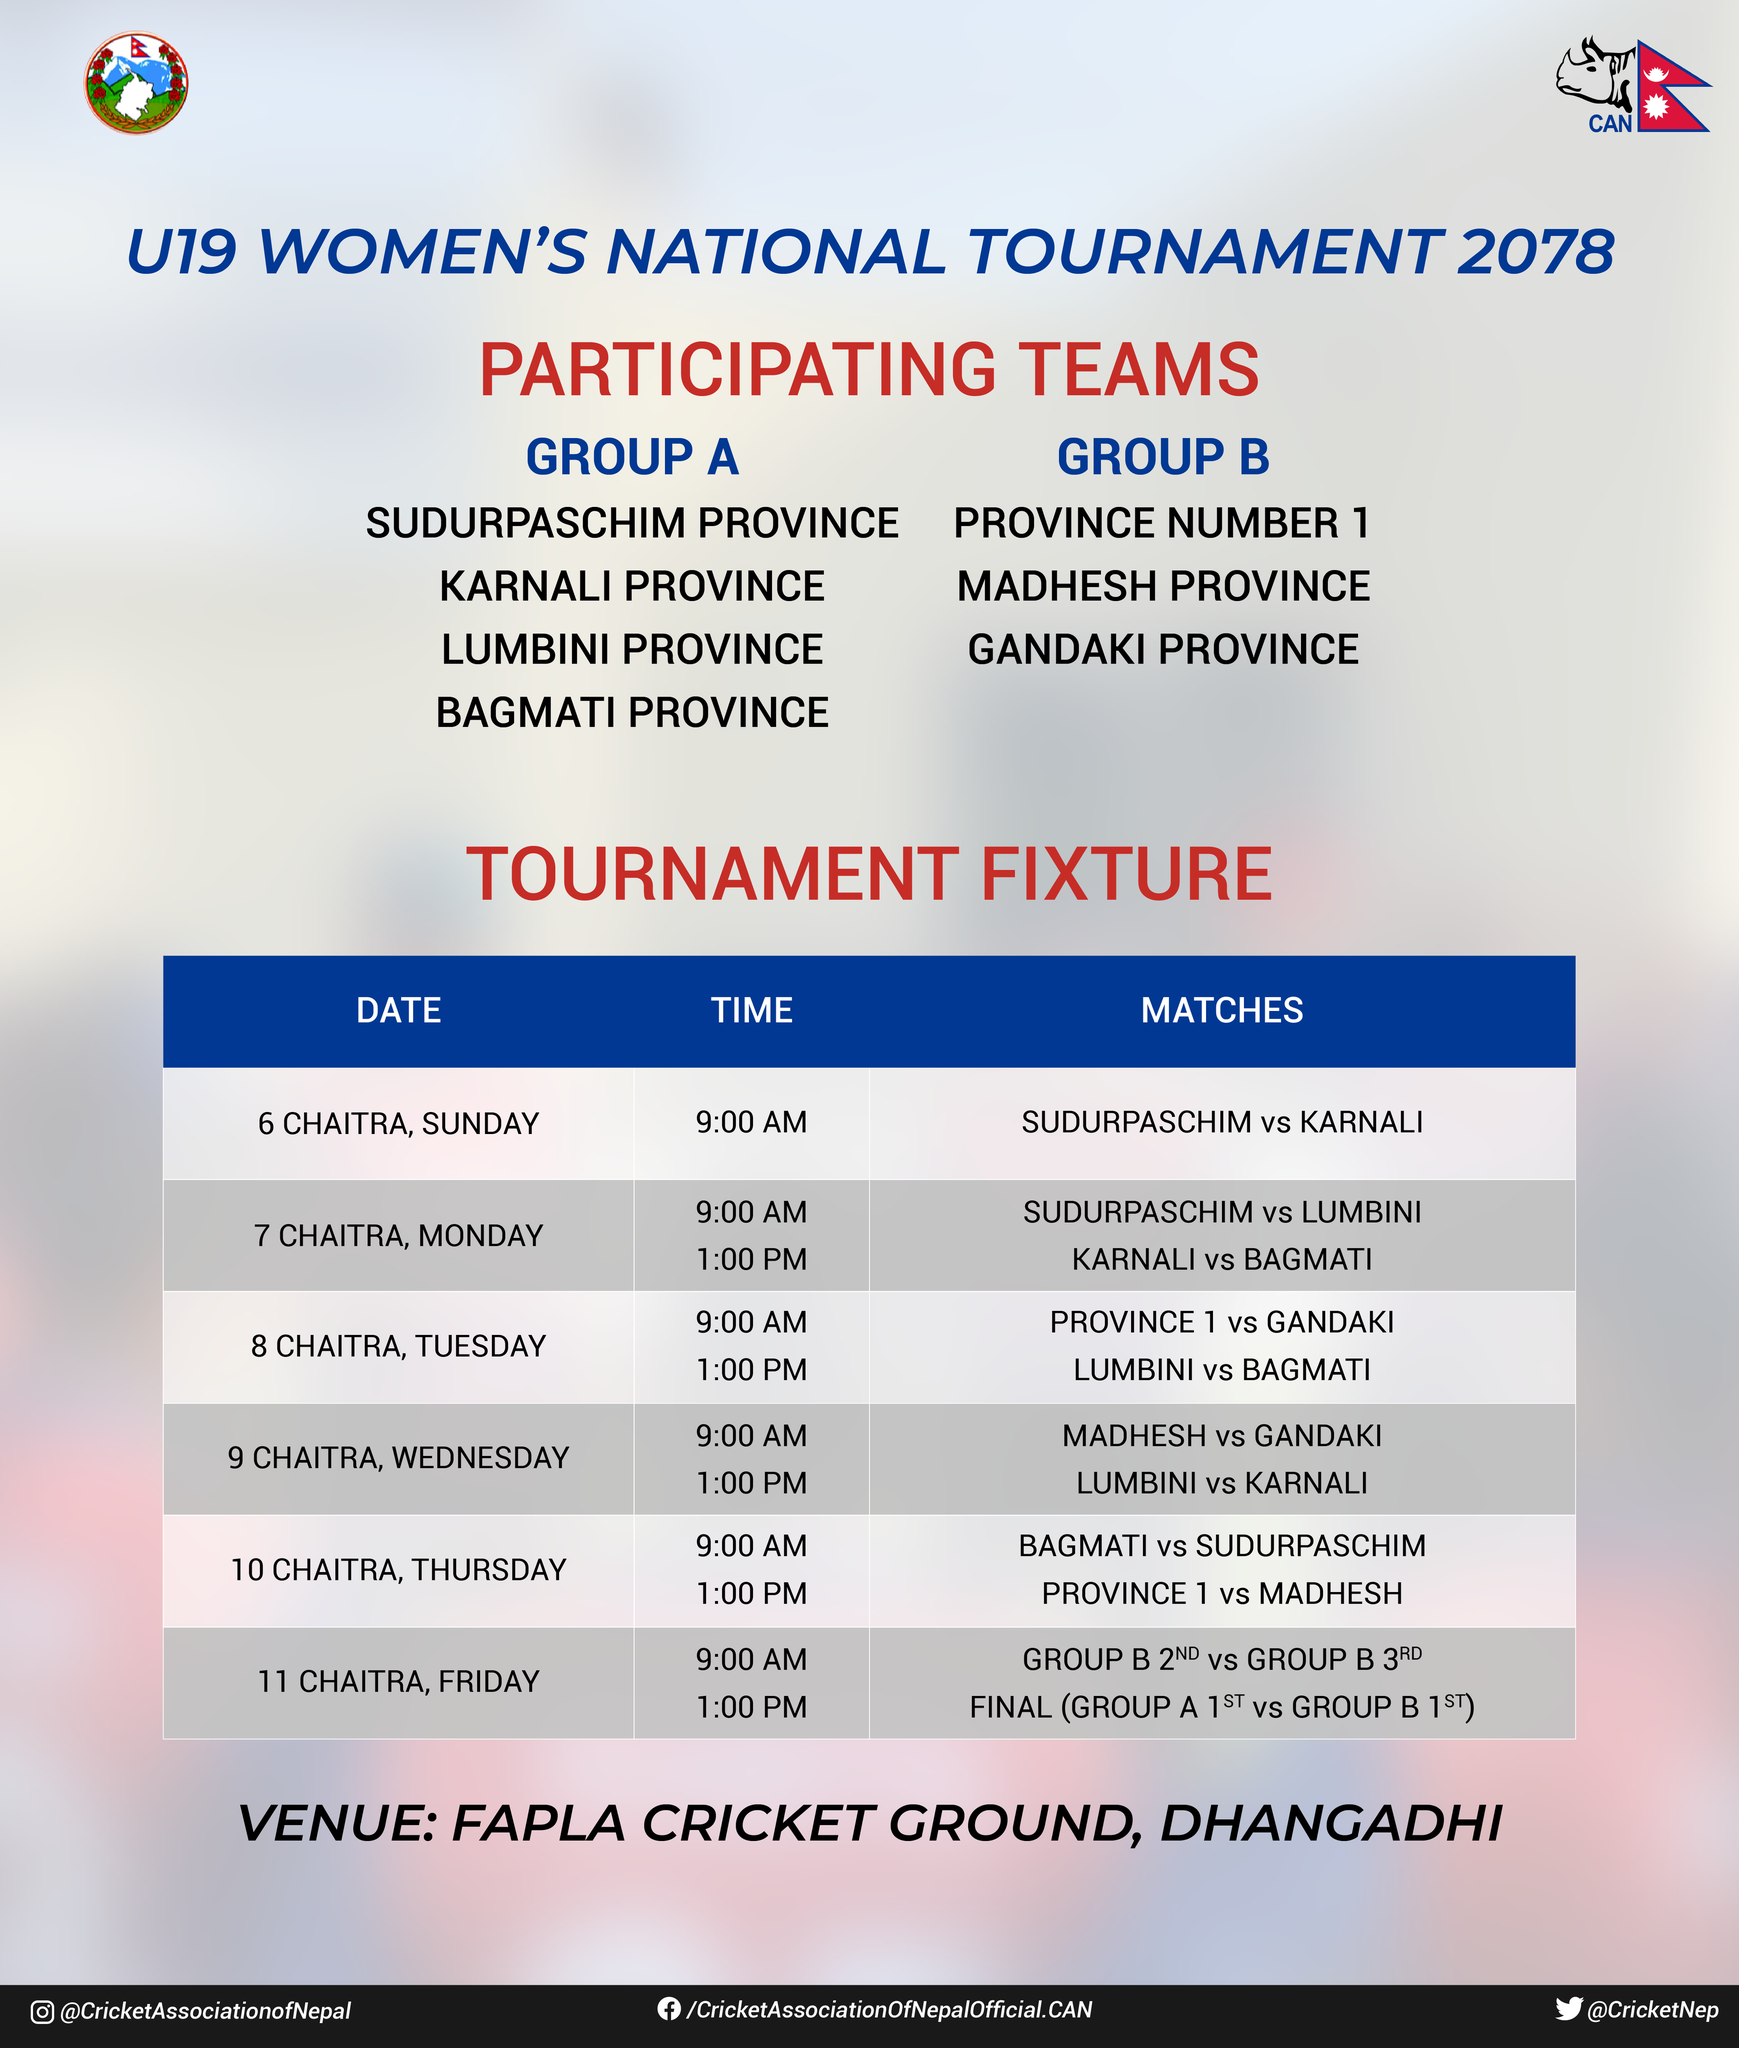 यु-१९ राष्ट्रिय महिला क्रिकेट प्रतियोगिताको खेल तालिका सार्वजनिक